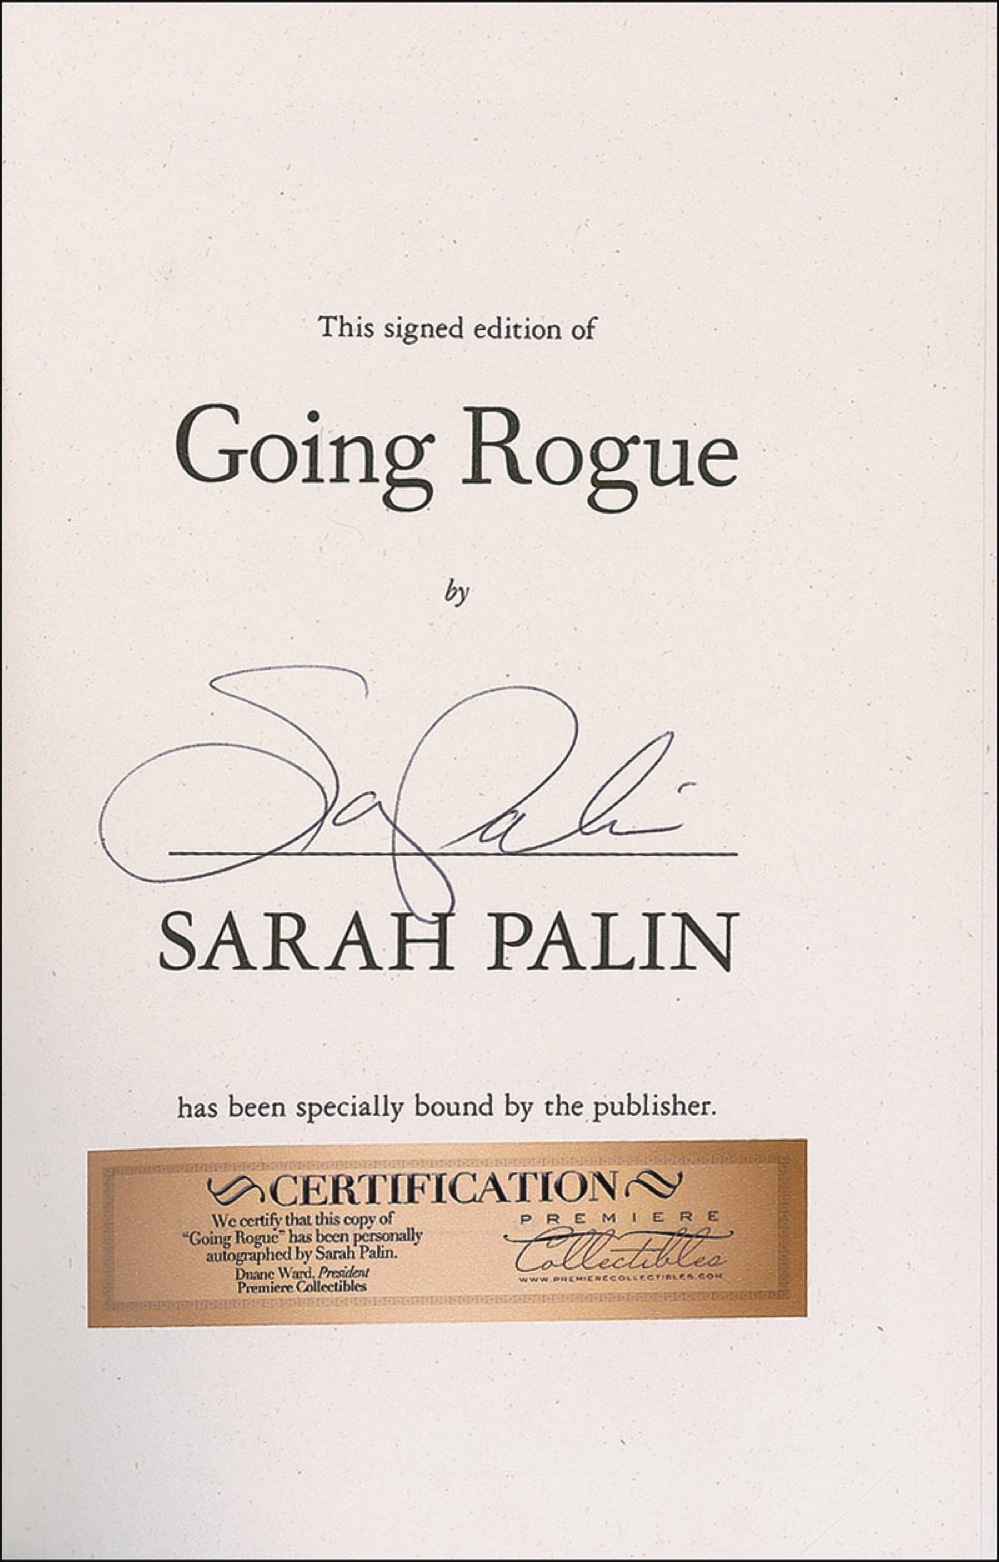 Lot #292 Sarah Palin